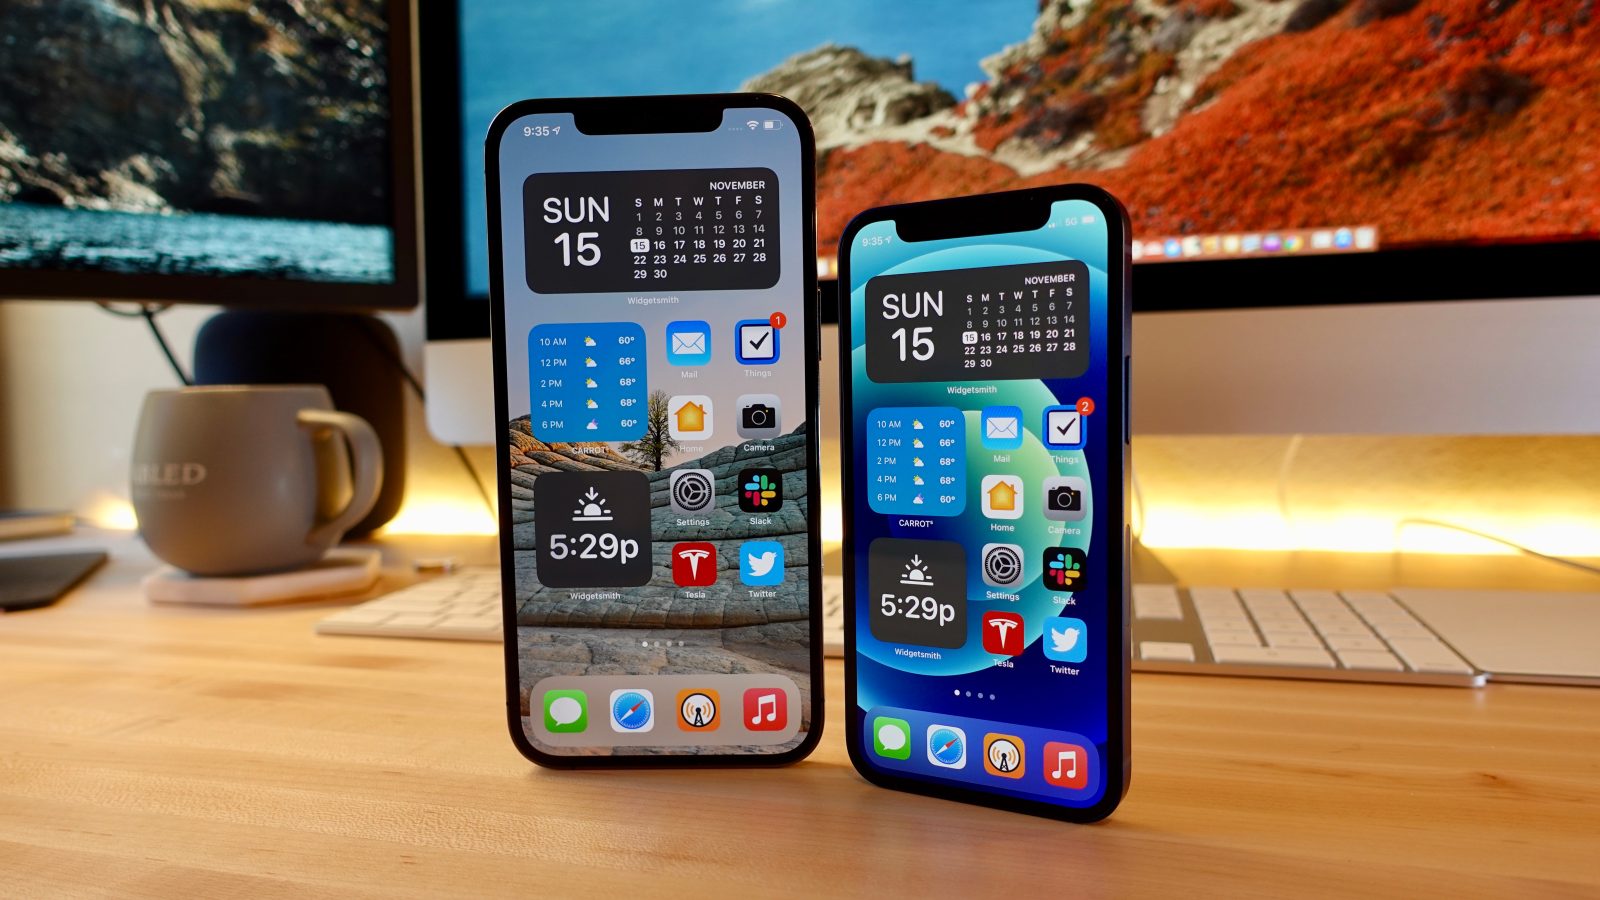 Hands-on: iPhone 12 mini versus iPhone 12 Pro Max design